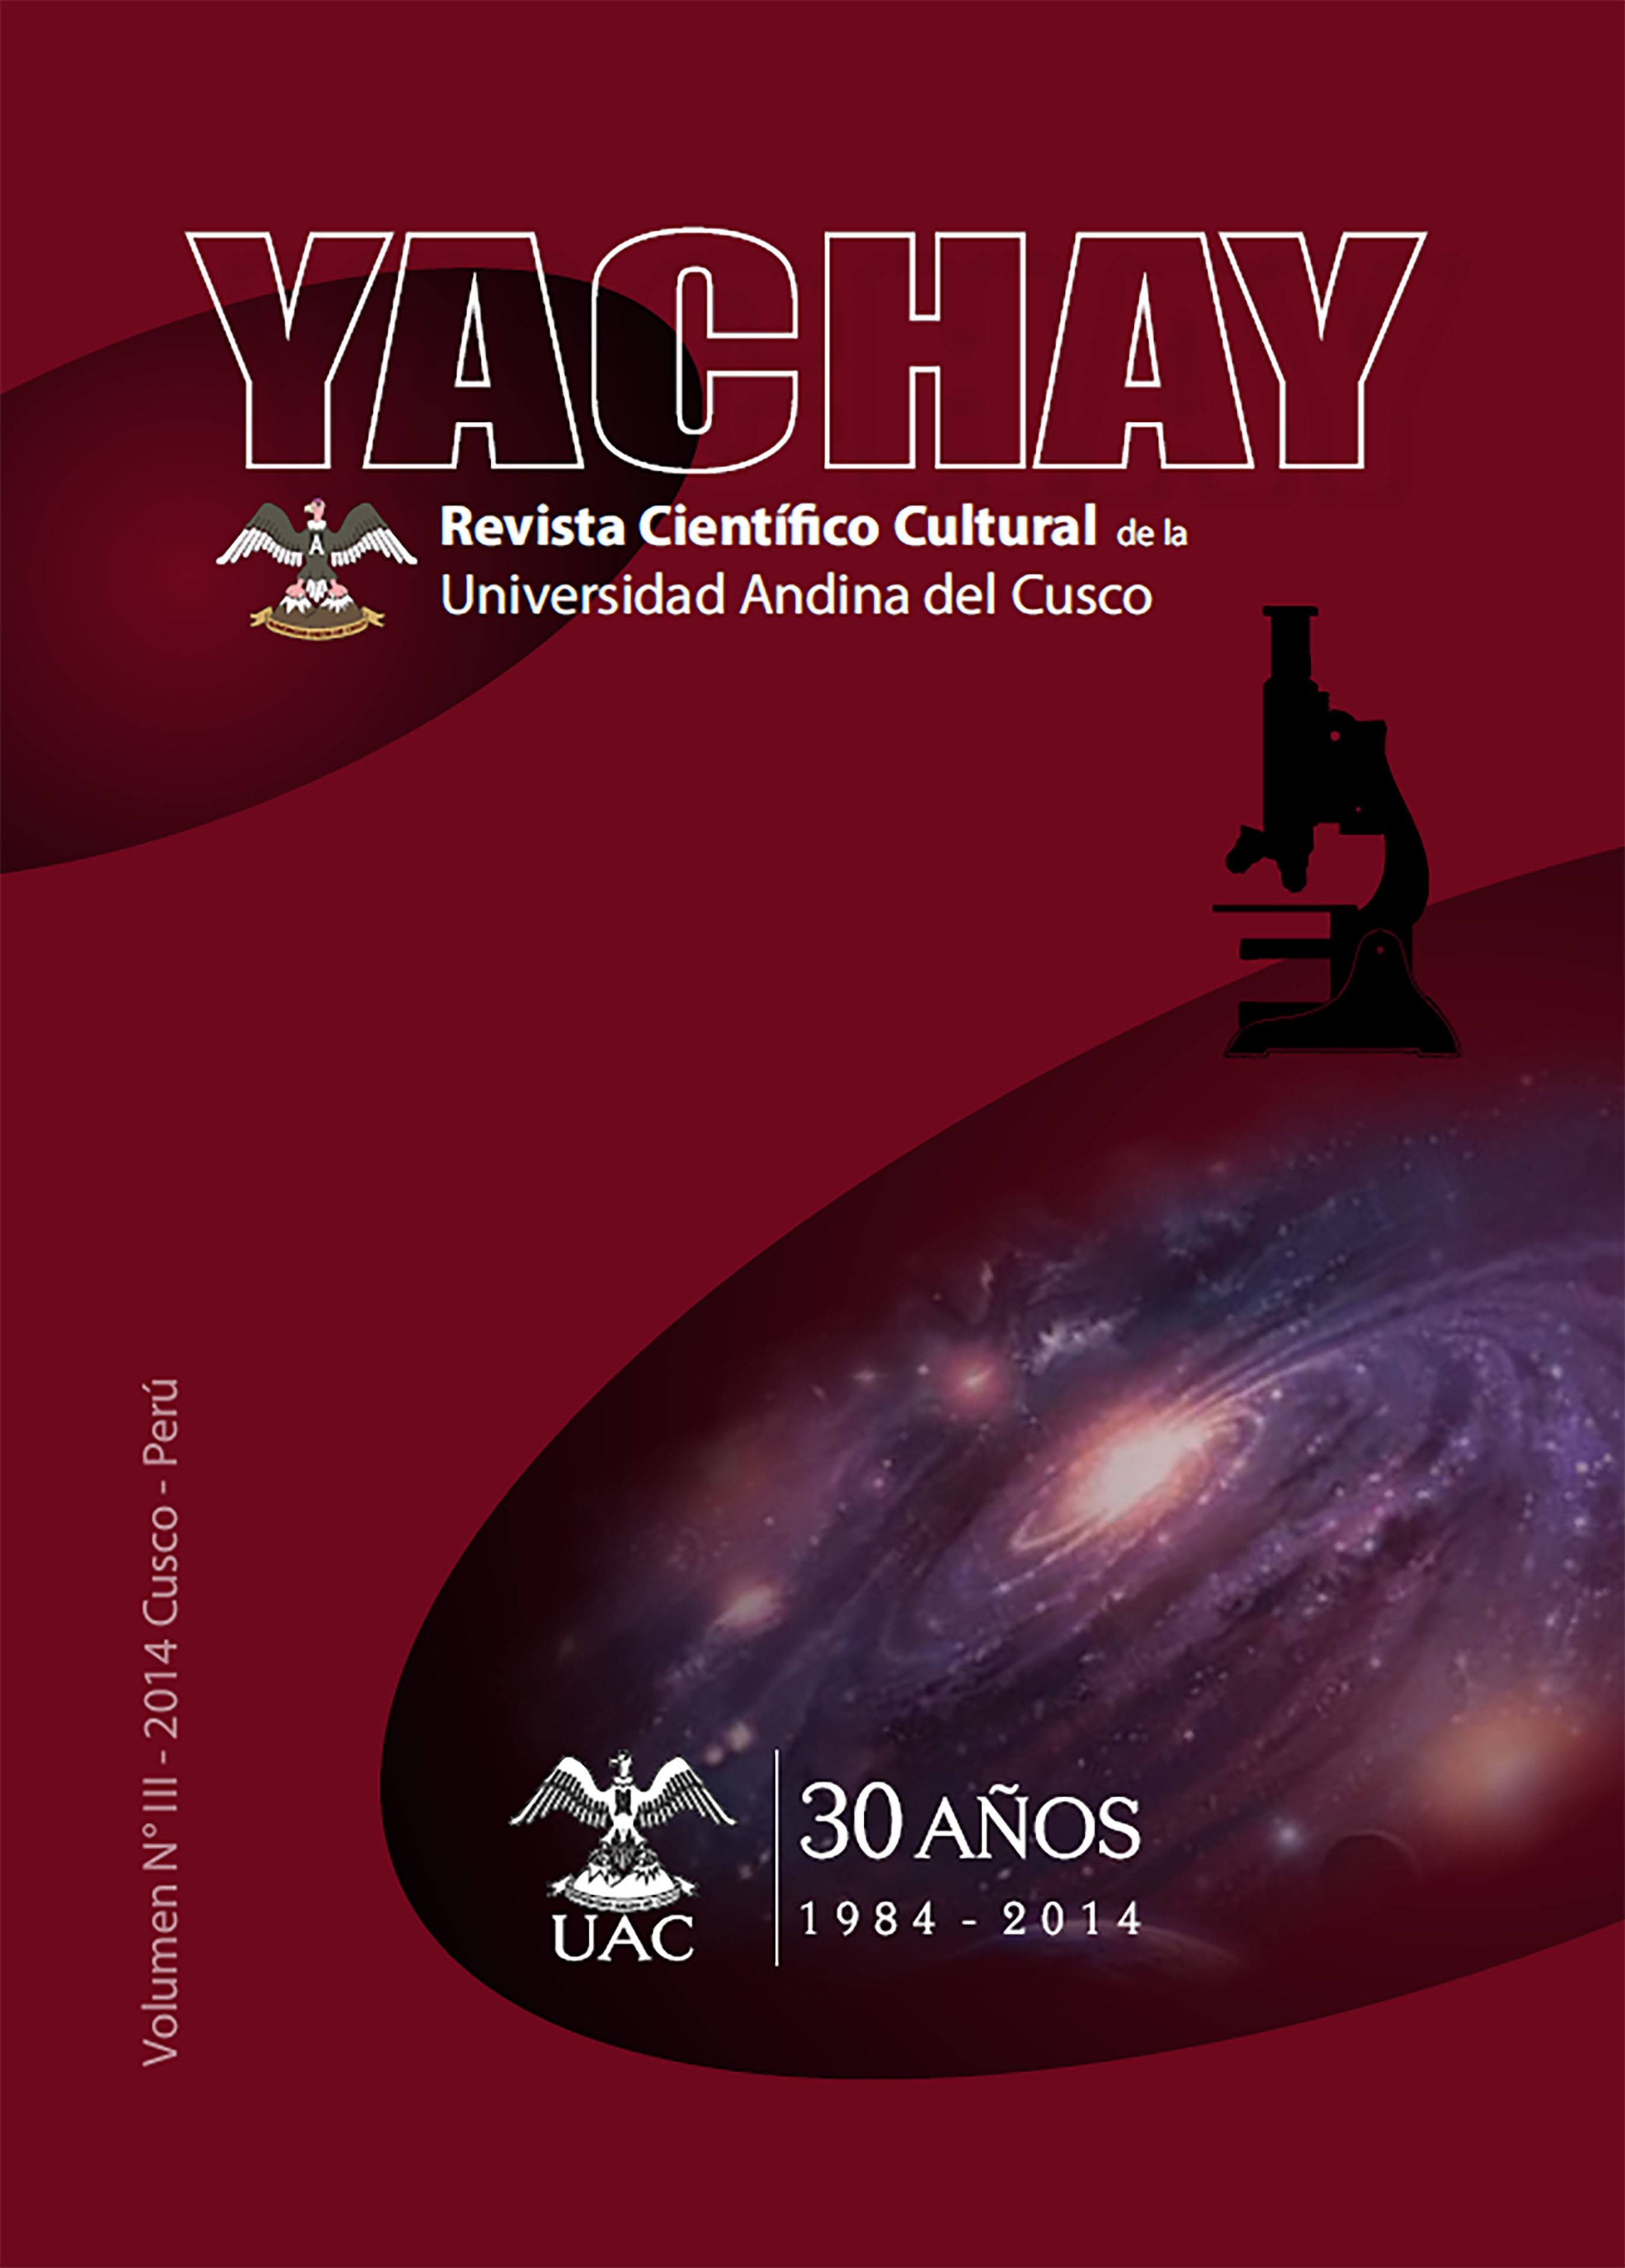 Yachay Revista científico cultural 2014 (publicación retroactiva)